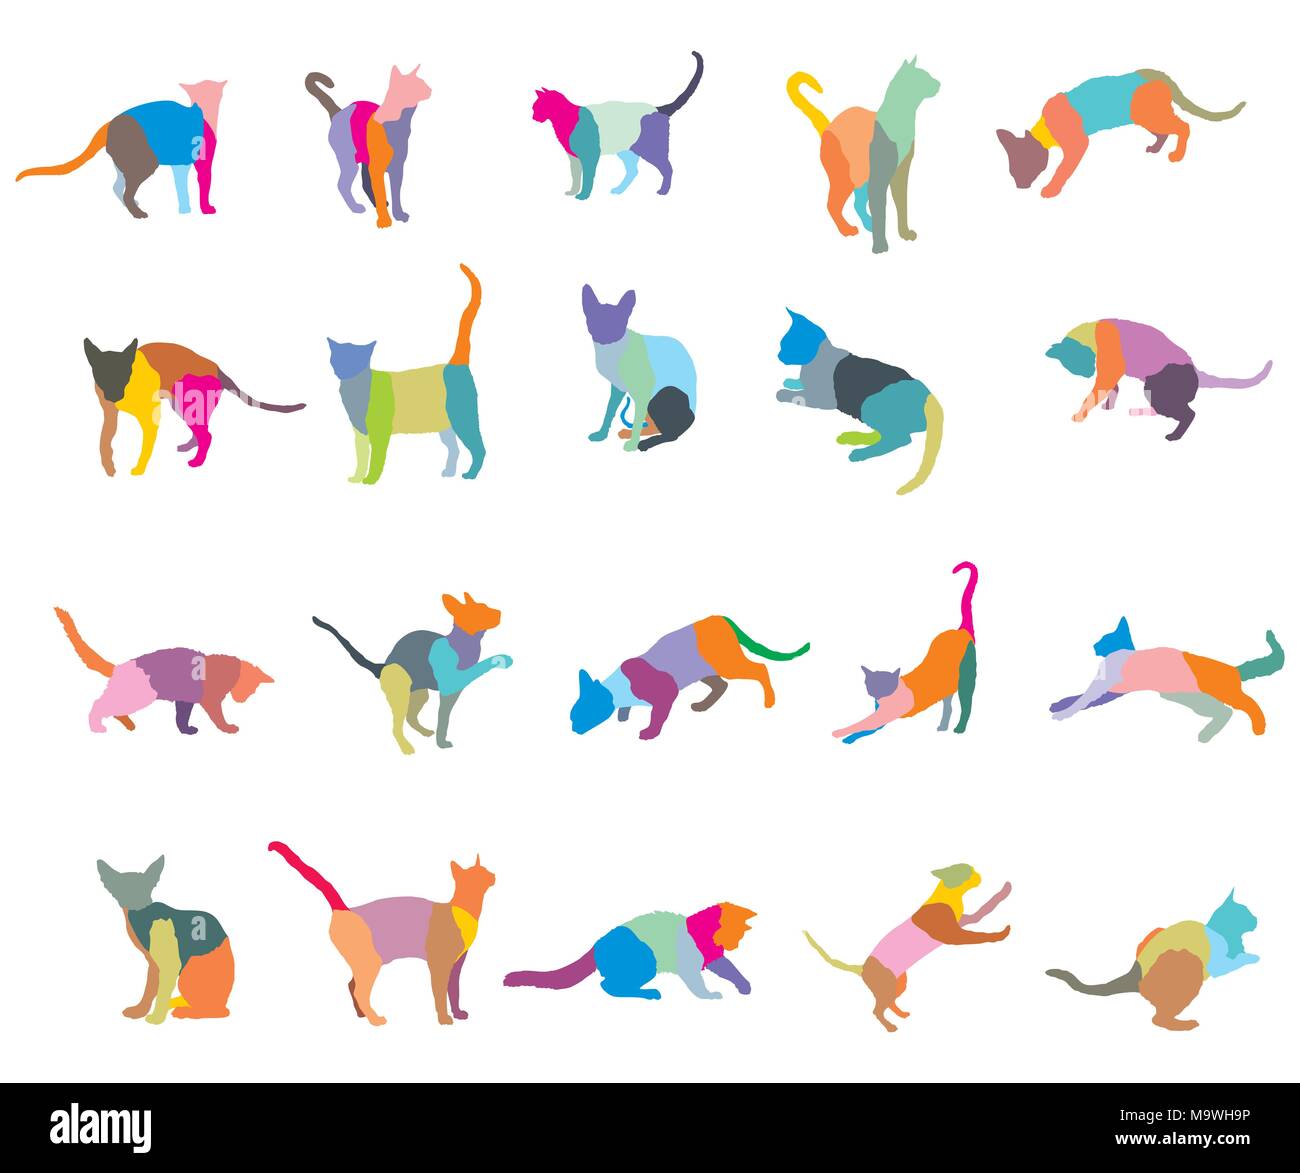 Ensemble de la mosaïque colorée des chats de races différentes silhouettes (assis, debout, couché, jouant) isolé sur fond blanc. Vector illustration. Illustration de Vecteur